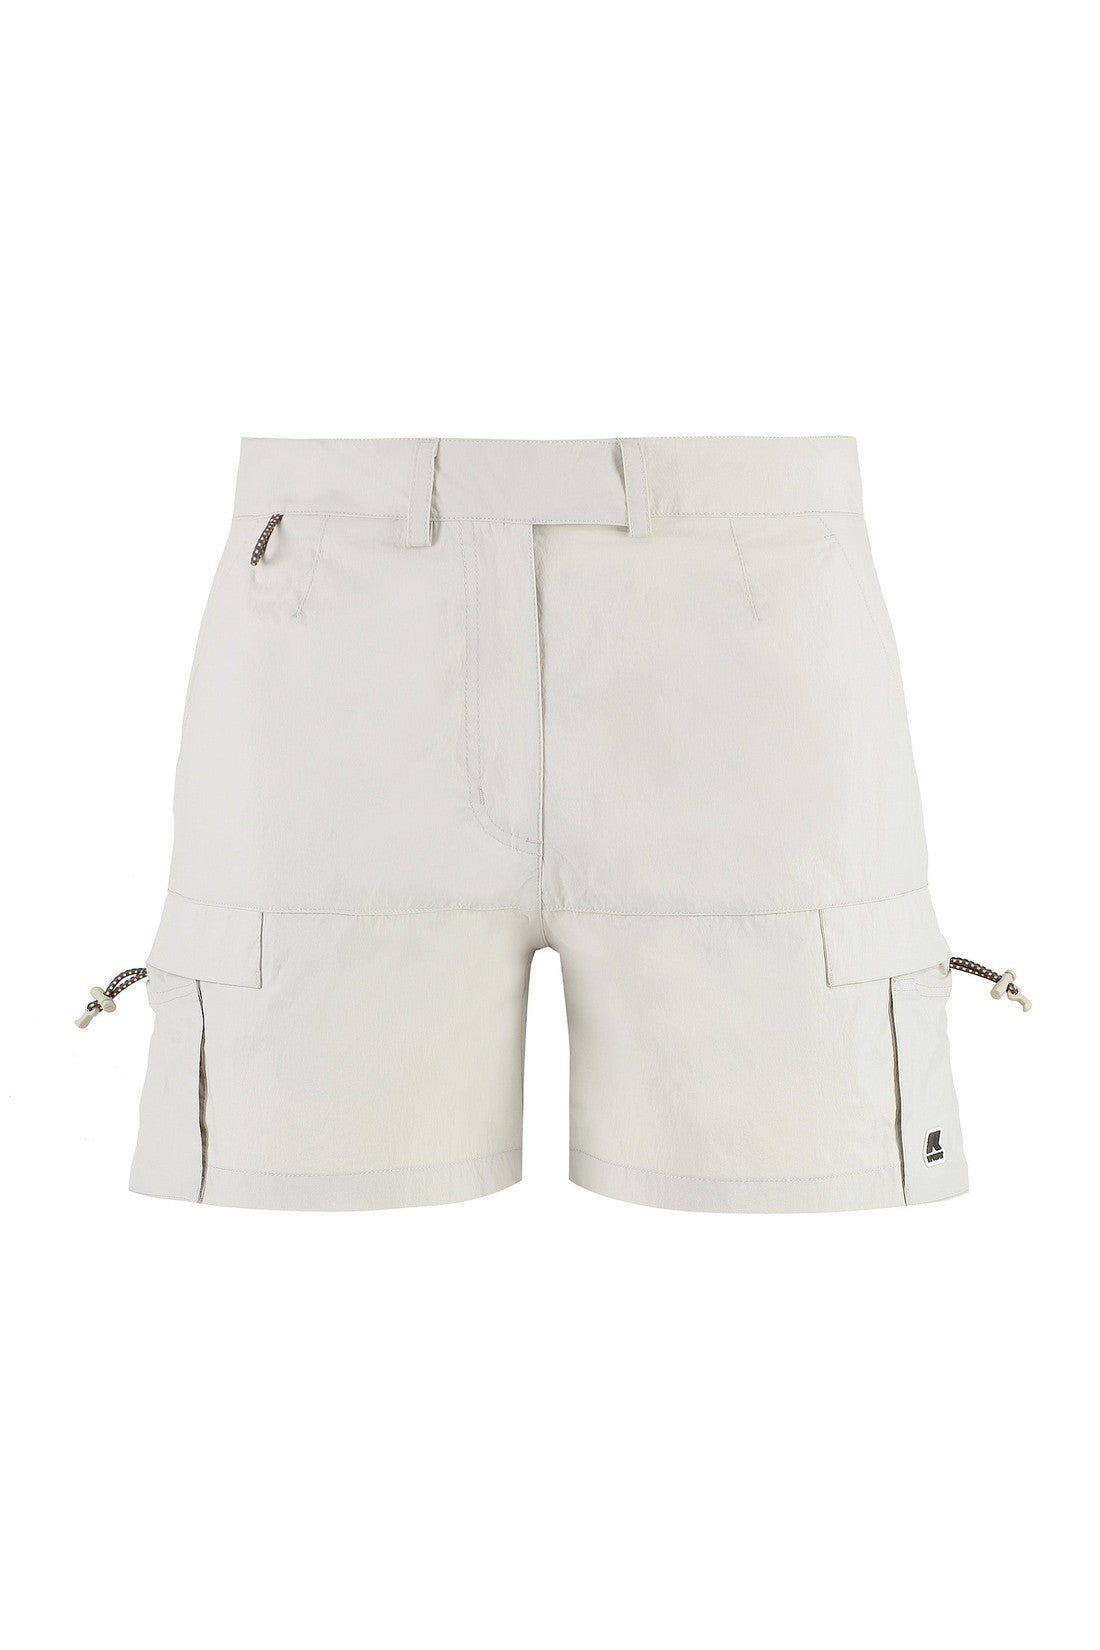 K-Way-OUTLET-SALE-Argalps nylon shorts-ARCHIVIST